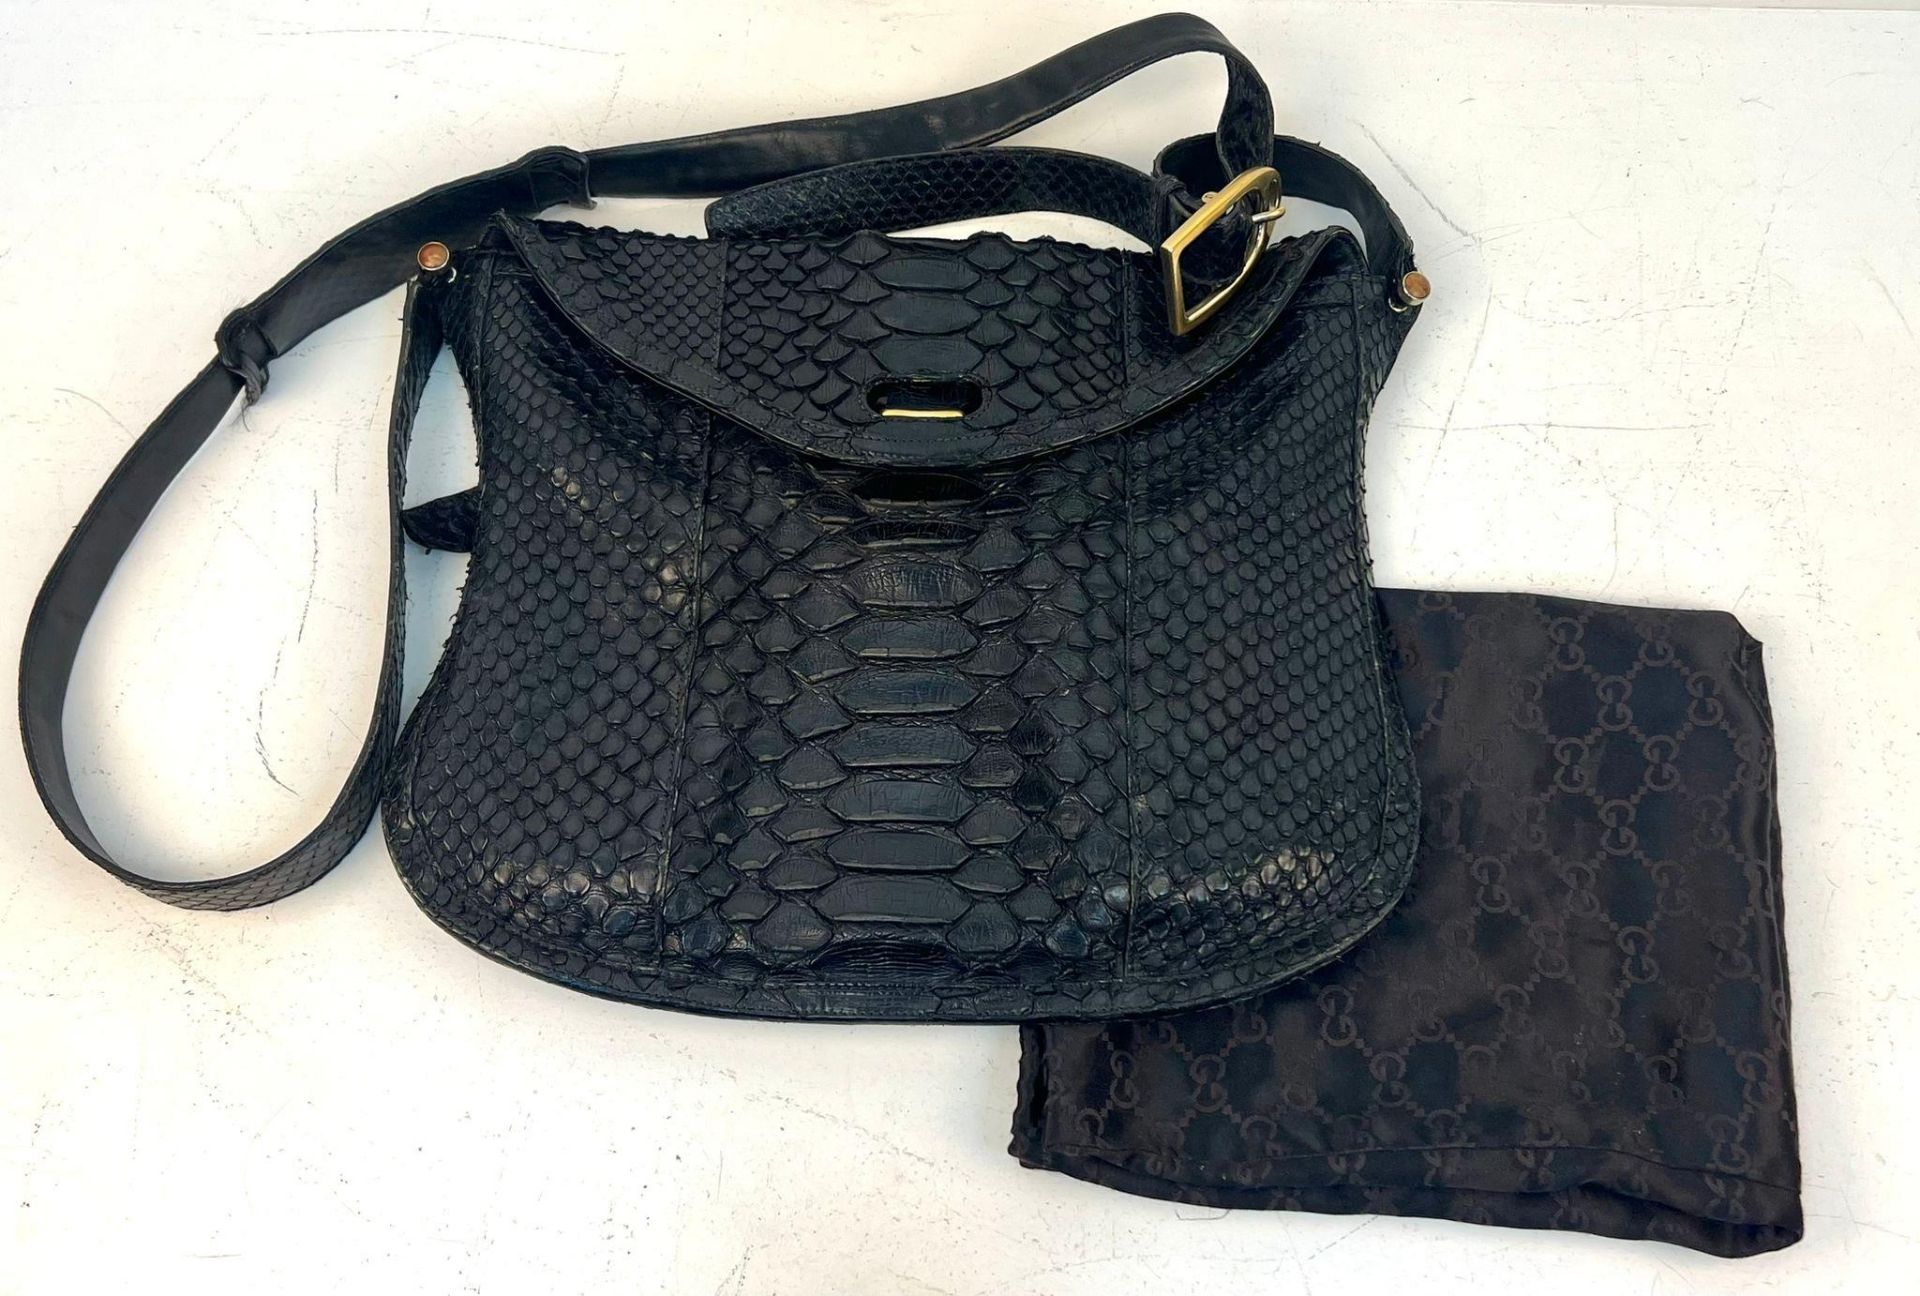 A Gucci Black Python/Snakeskin Shoulder Bag. Gold-tone hardware. Adjustable shoulder strap. Spacious